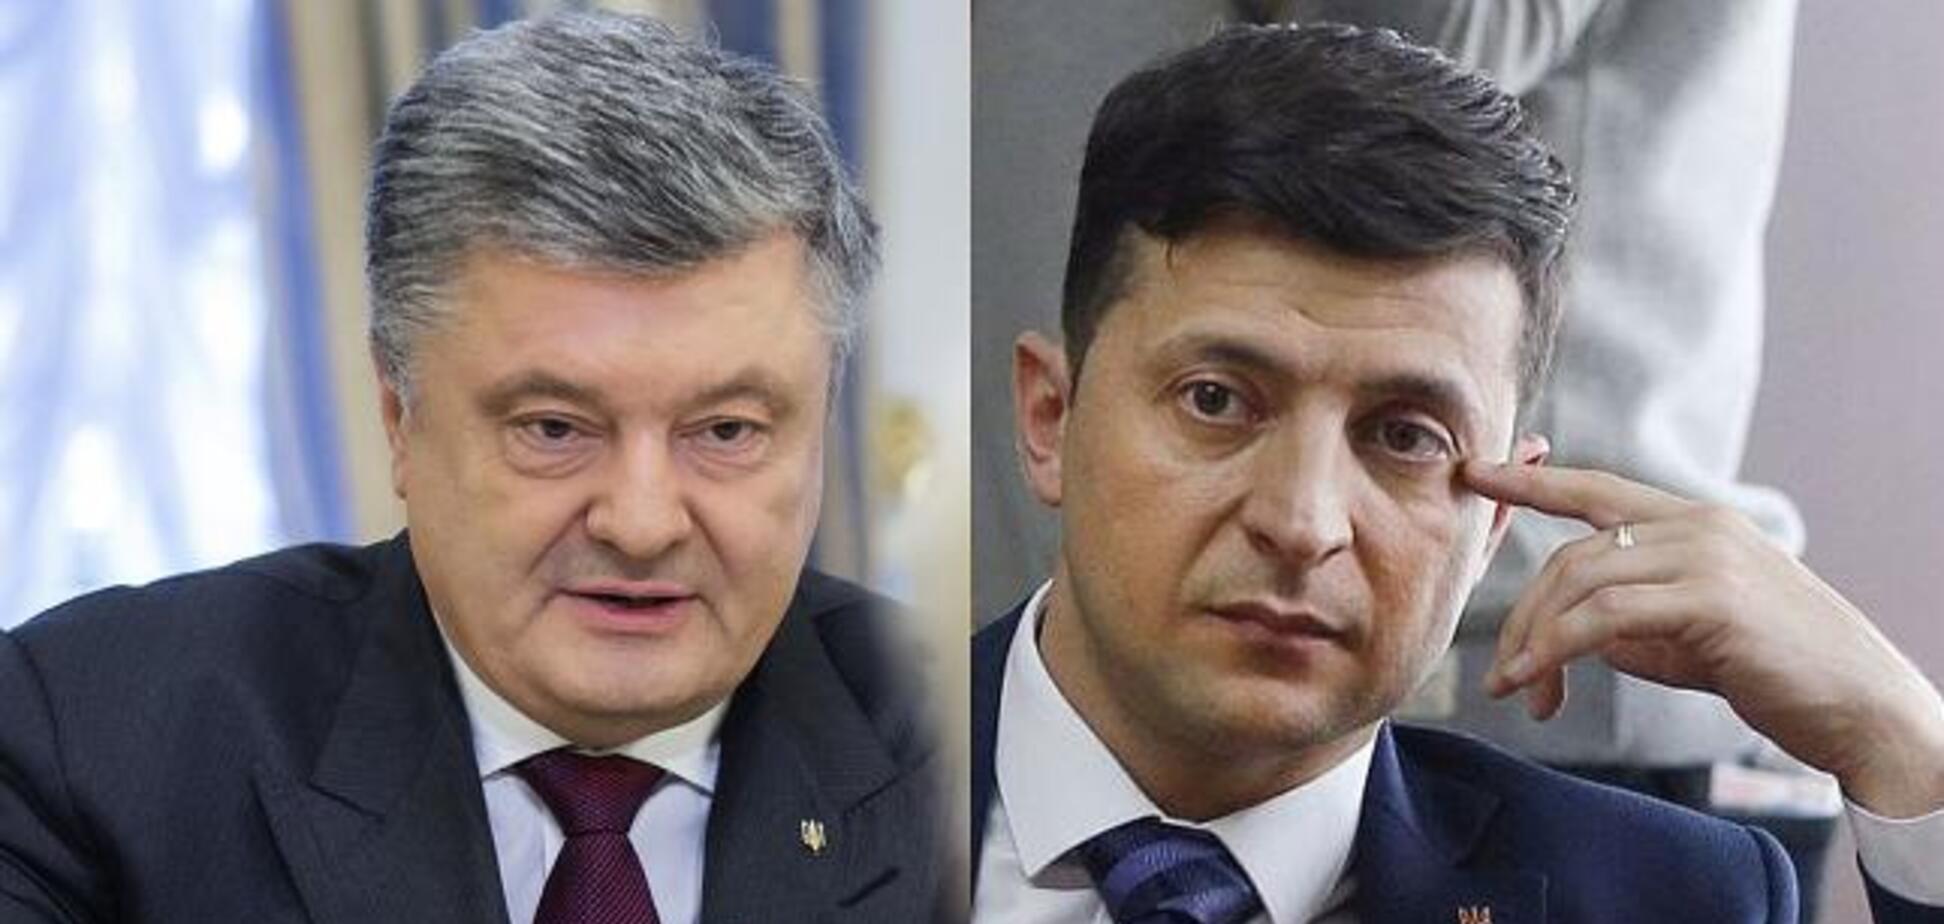 Політична Україна зеленіє: кого 'розбиратимуть на запчастини'